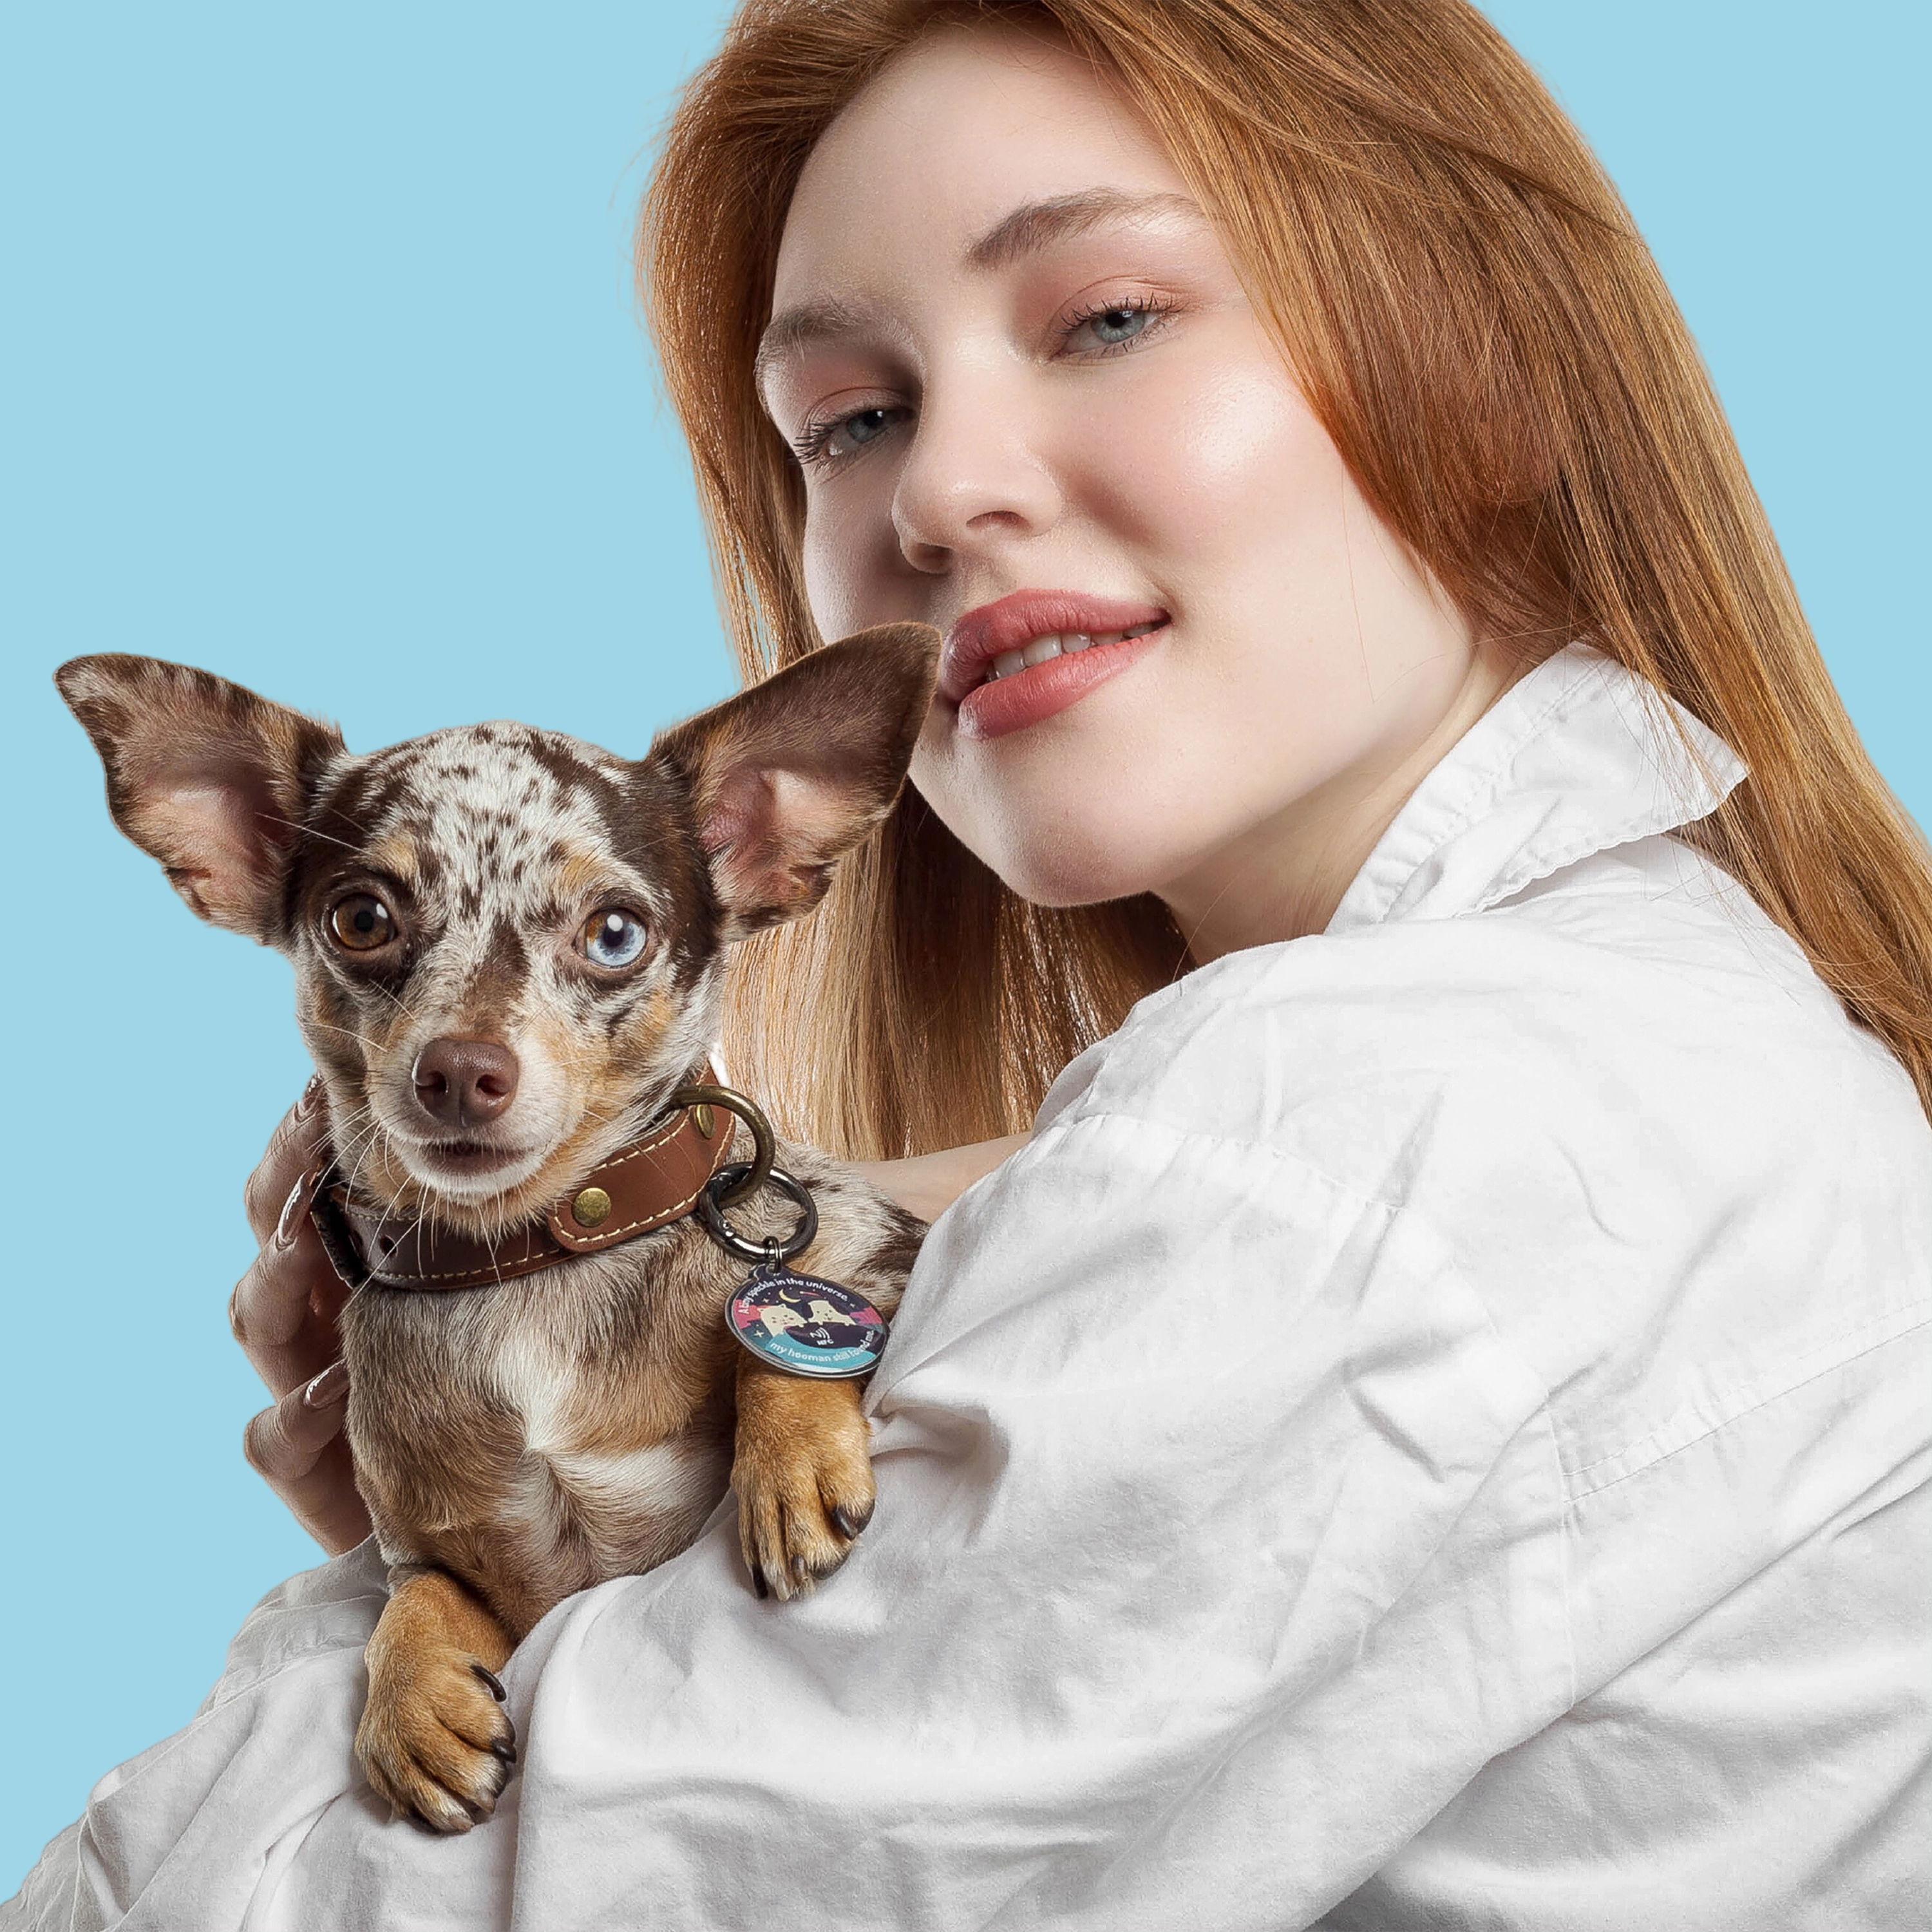 A dapple Dachshund-Chihuahua mix wearing IndieTag